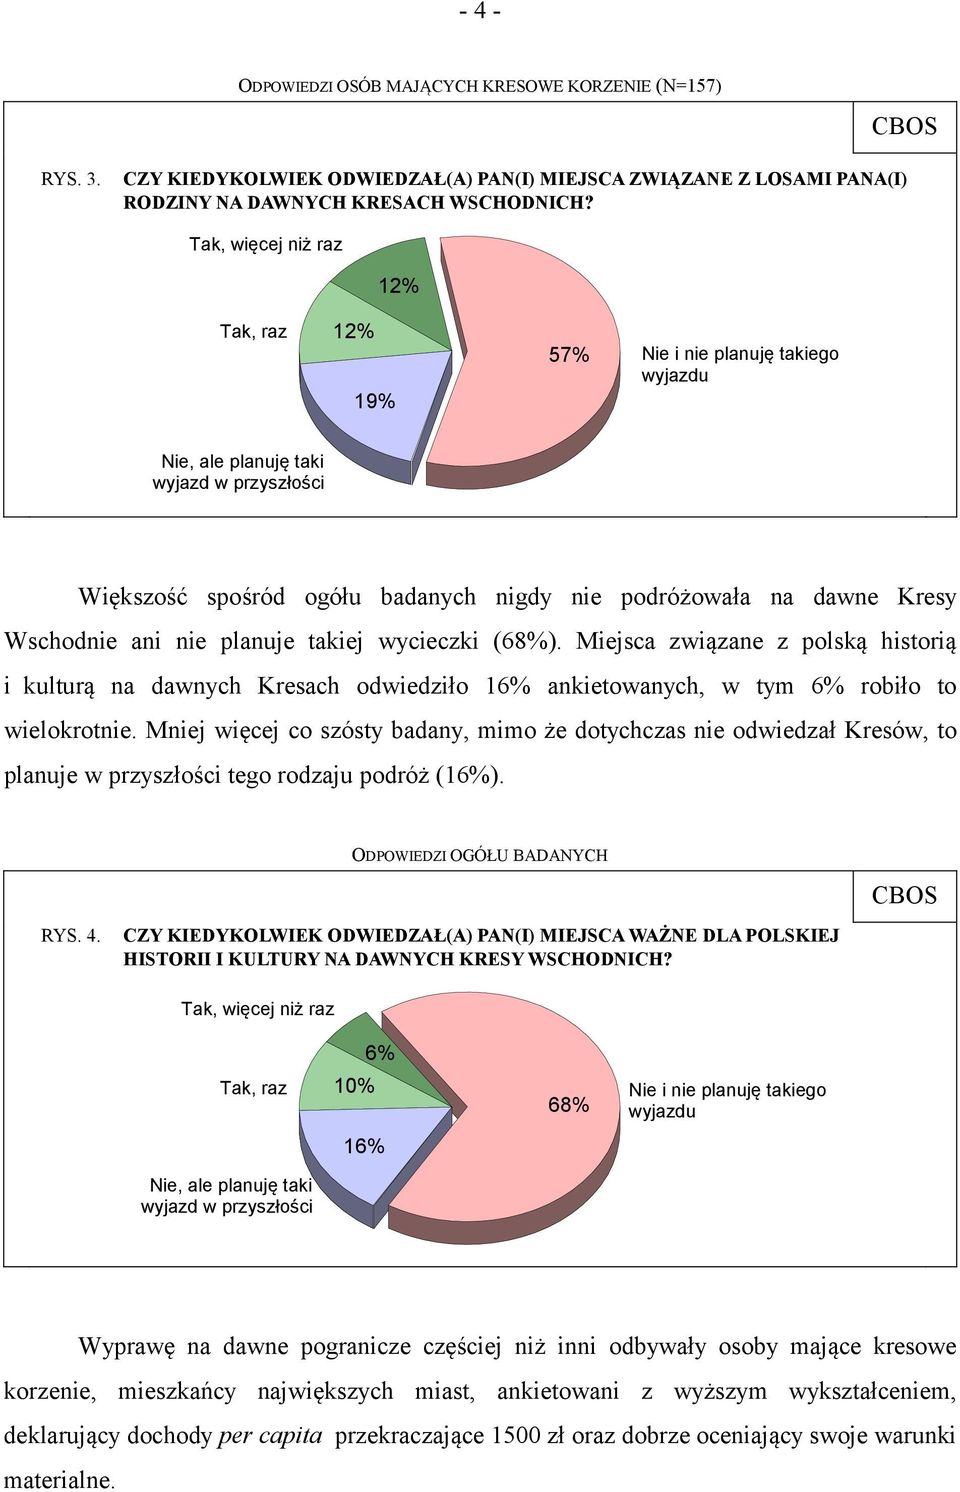 Wschodnie ani nie planuje takiej wycieczki (68%). Miejsca związane z polską historią i kulturą na dawnych Kresach odwiedziło 16% ankietowanych, w tym 6% robiło to wielokrotnie.